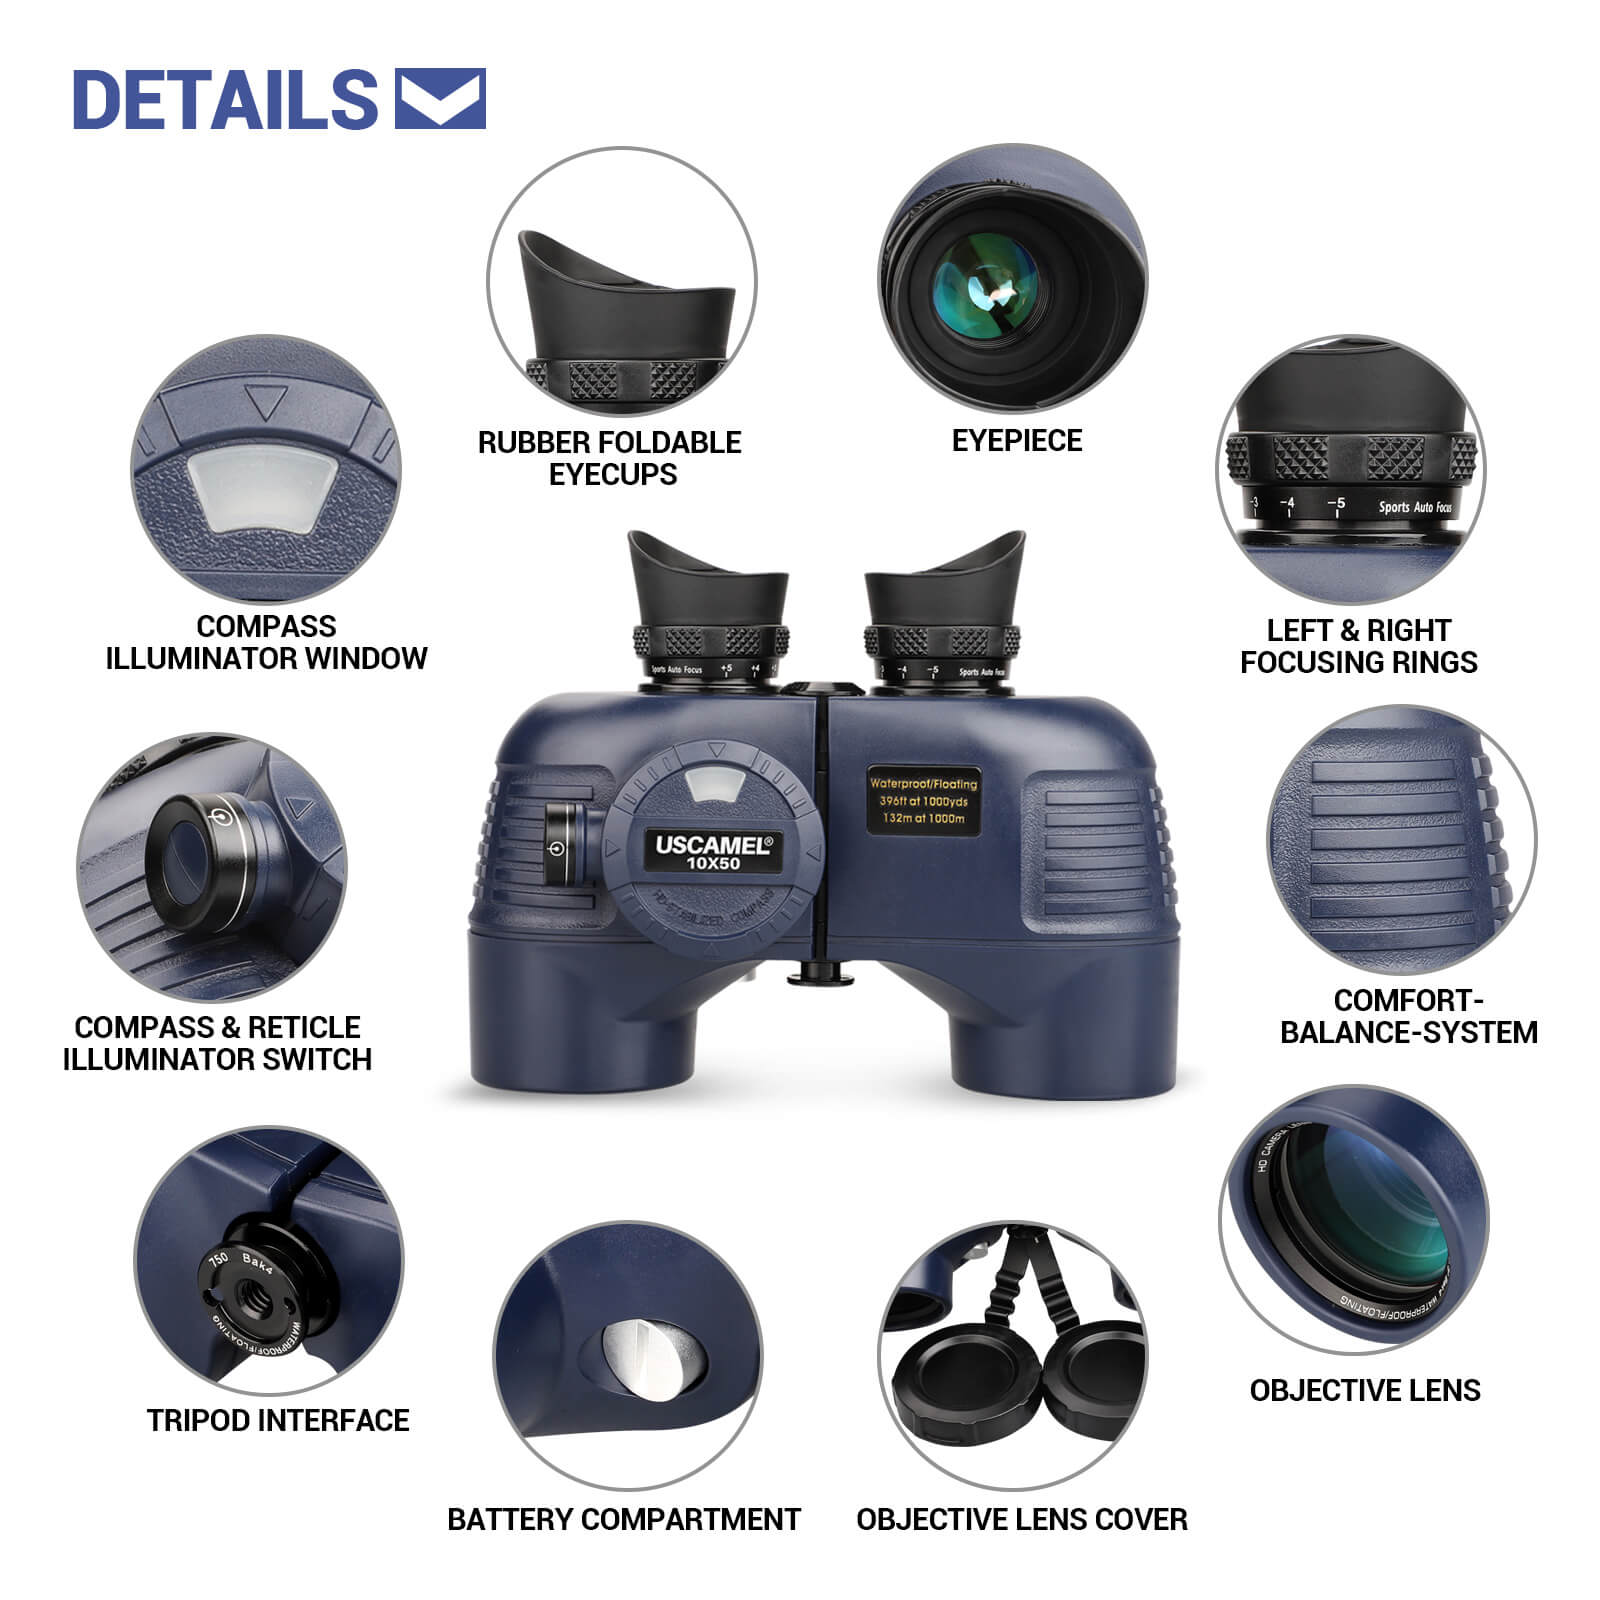 uw119 binoculars details